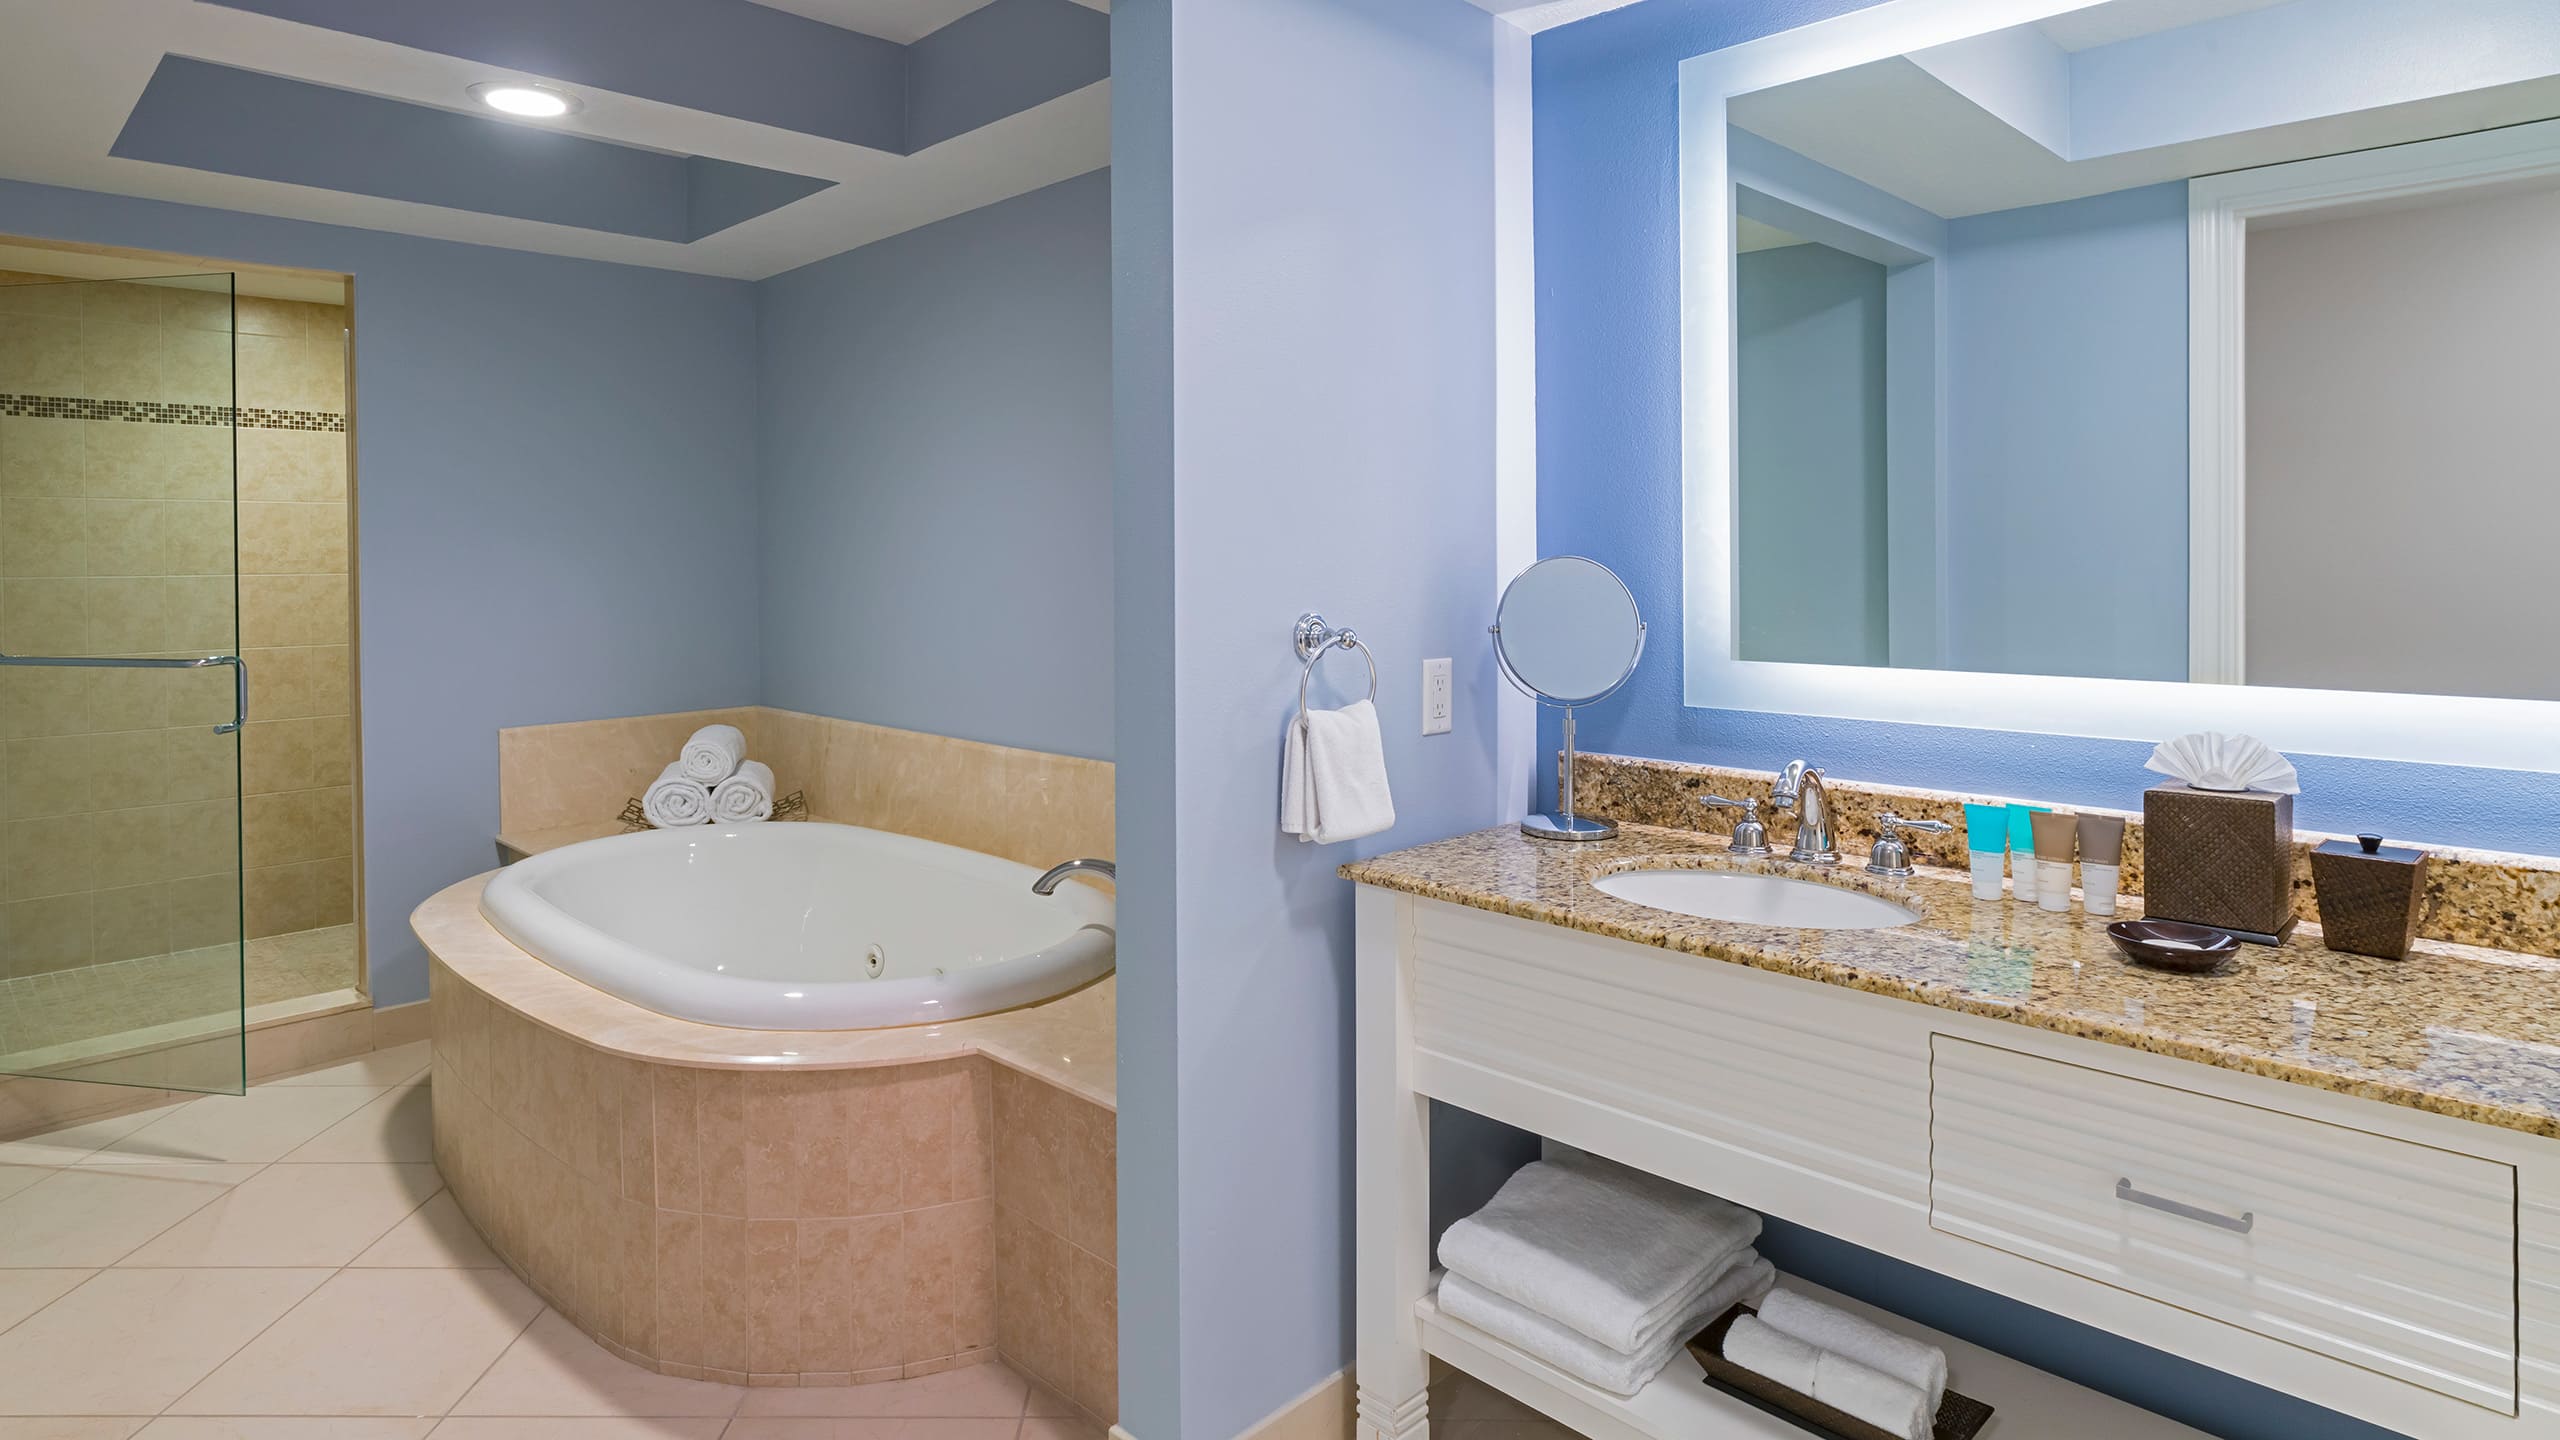 Hyatt Regency Clearwater Beach Resort and Spa Two Bedroom Suite Deluxe View Bathroom